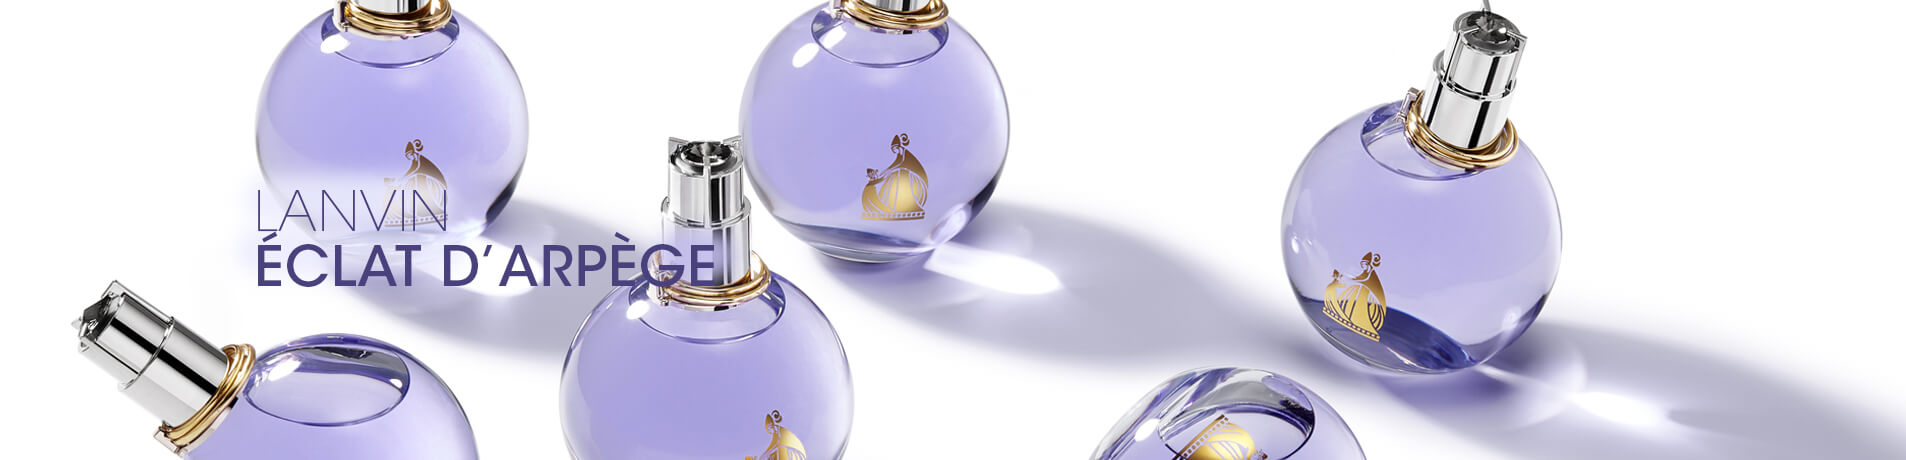 香水巨头 Inter Parfums 今年一季度销售额同比增长37%，提高全年业绩预期